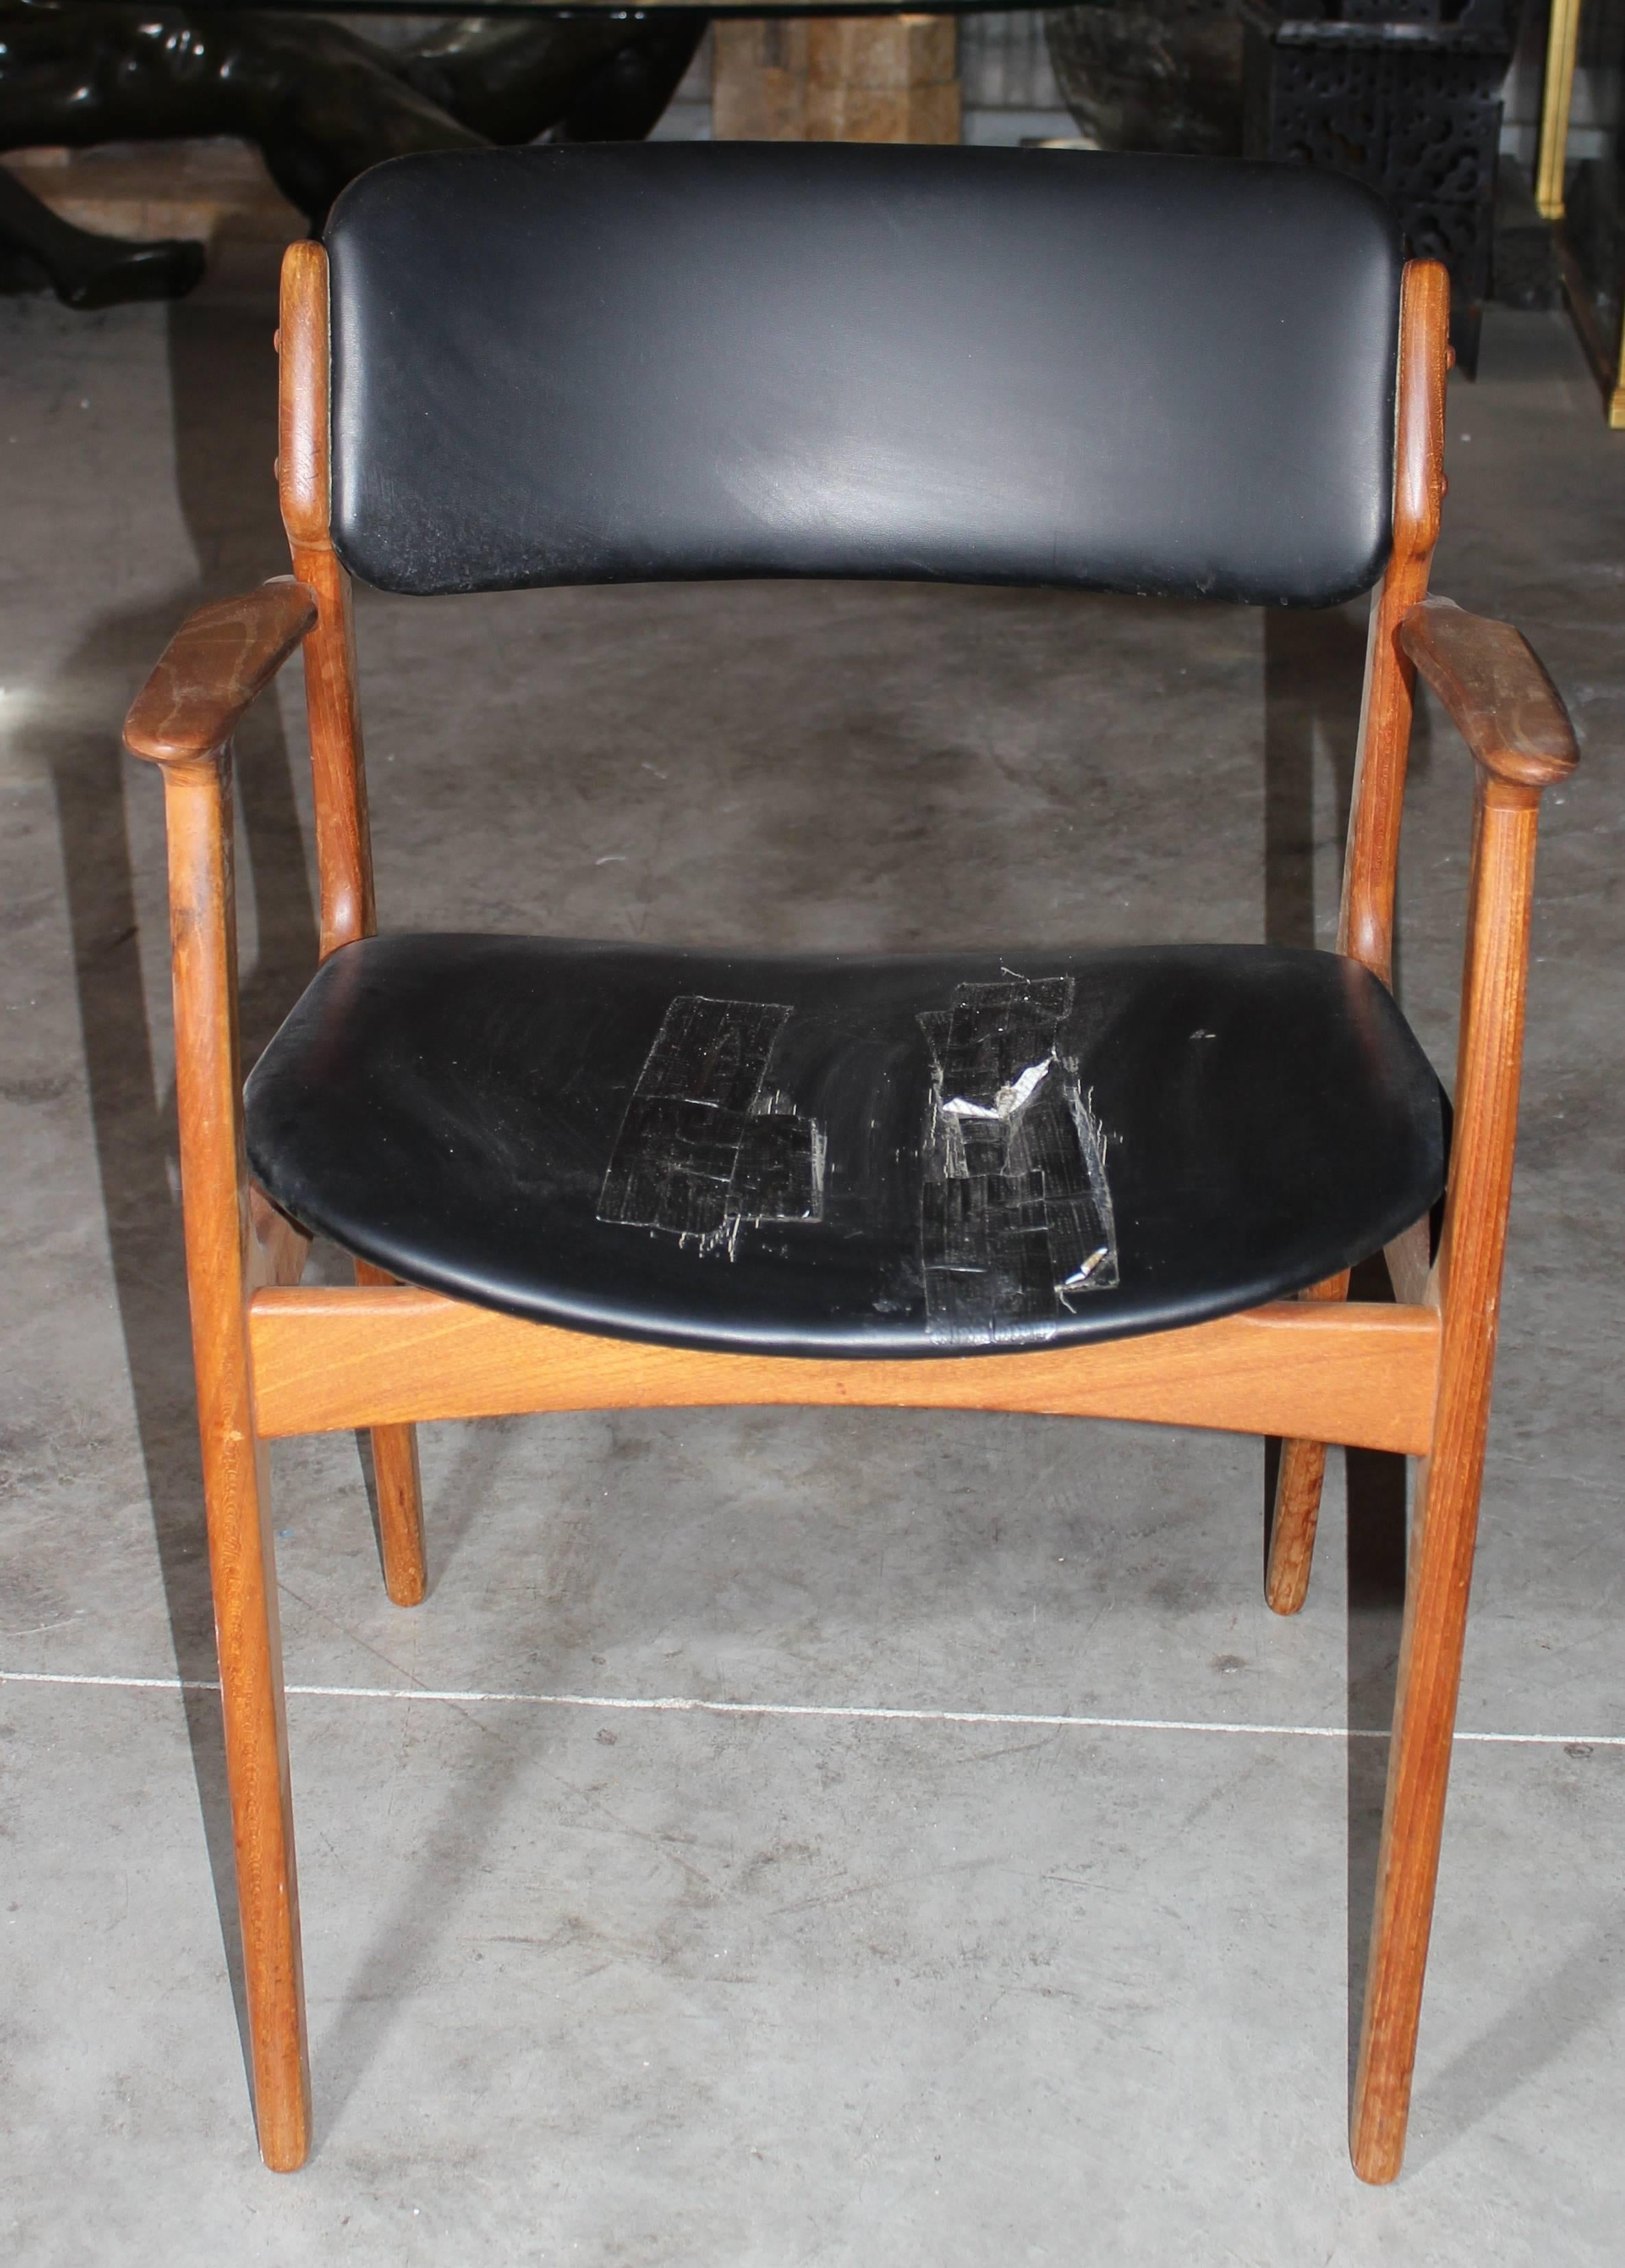 Original 1970s Scandinavian design wooden chair.